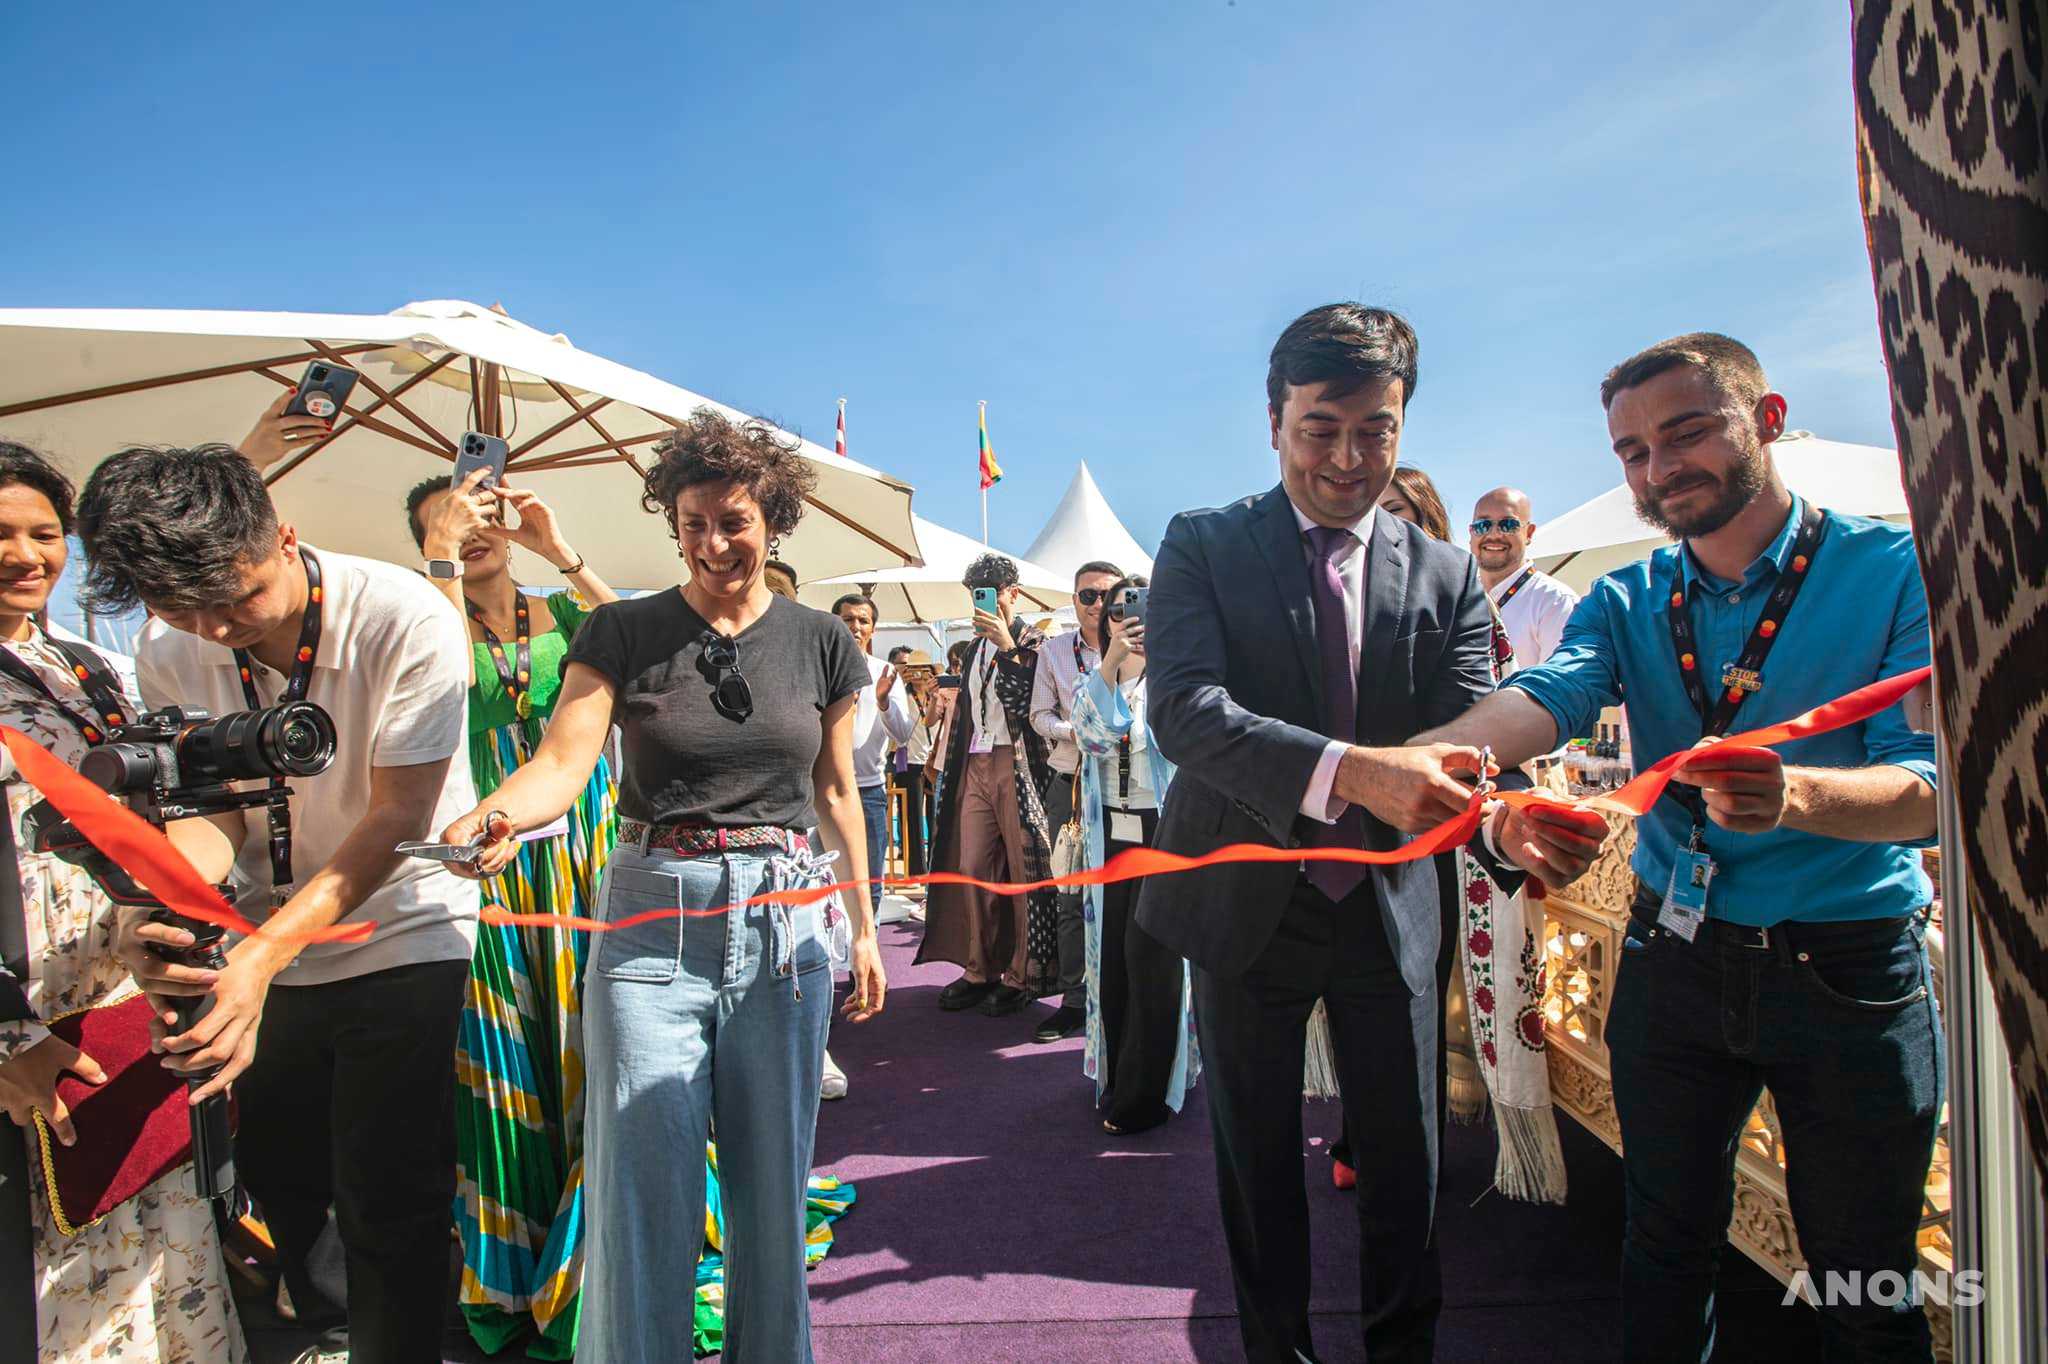 Национальный павильон Узбекистана торжественно открылся на Каннском кинофестивале – фото